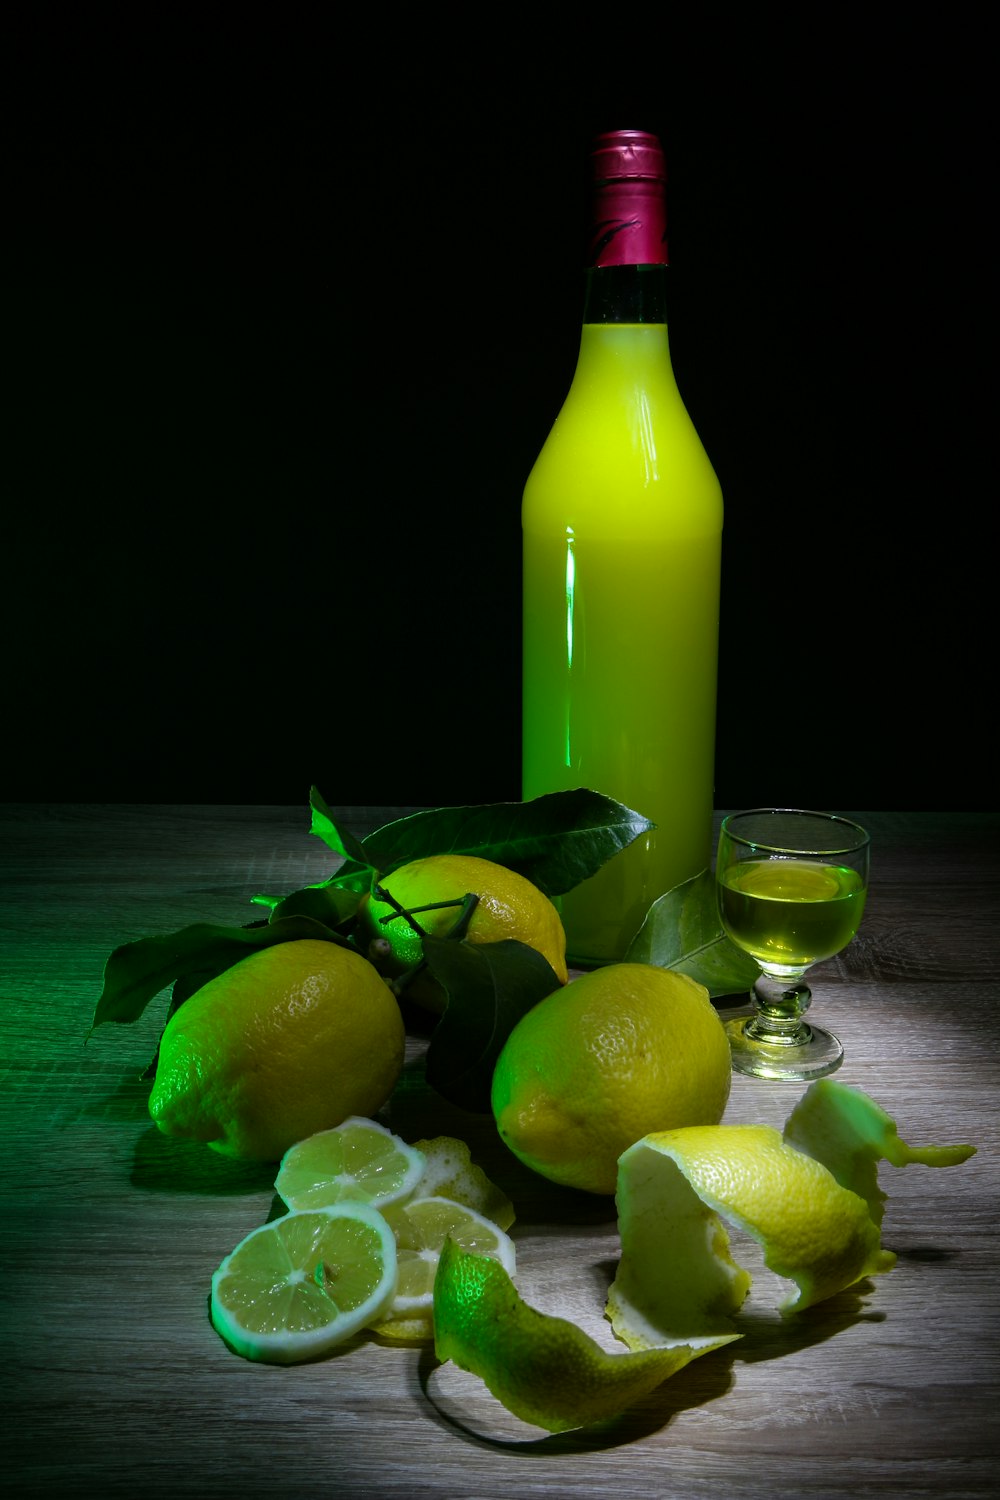 レモンフルーツと黄色いガラス瓶